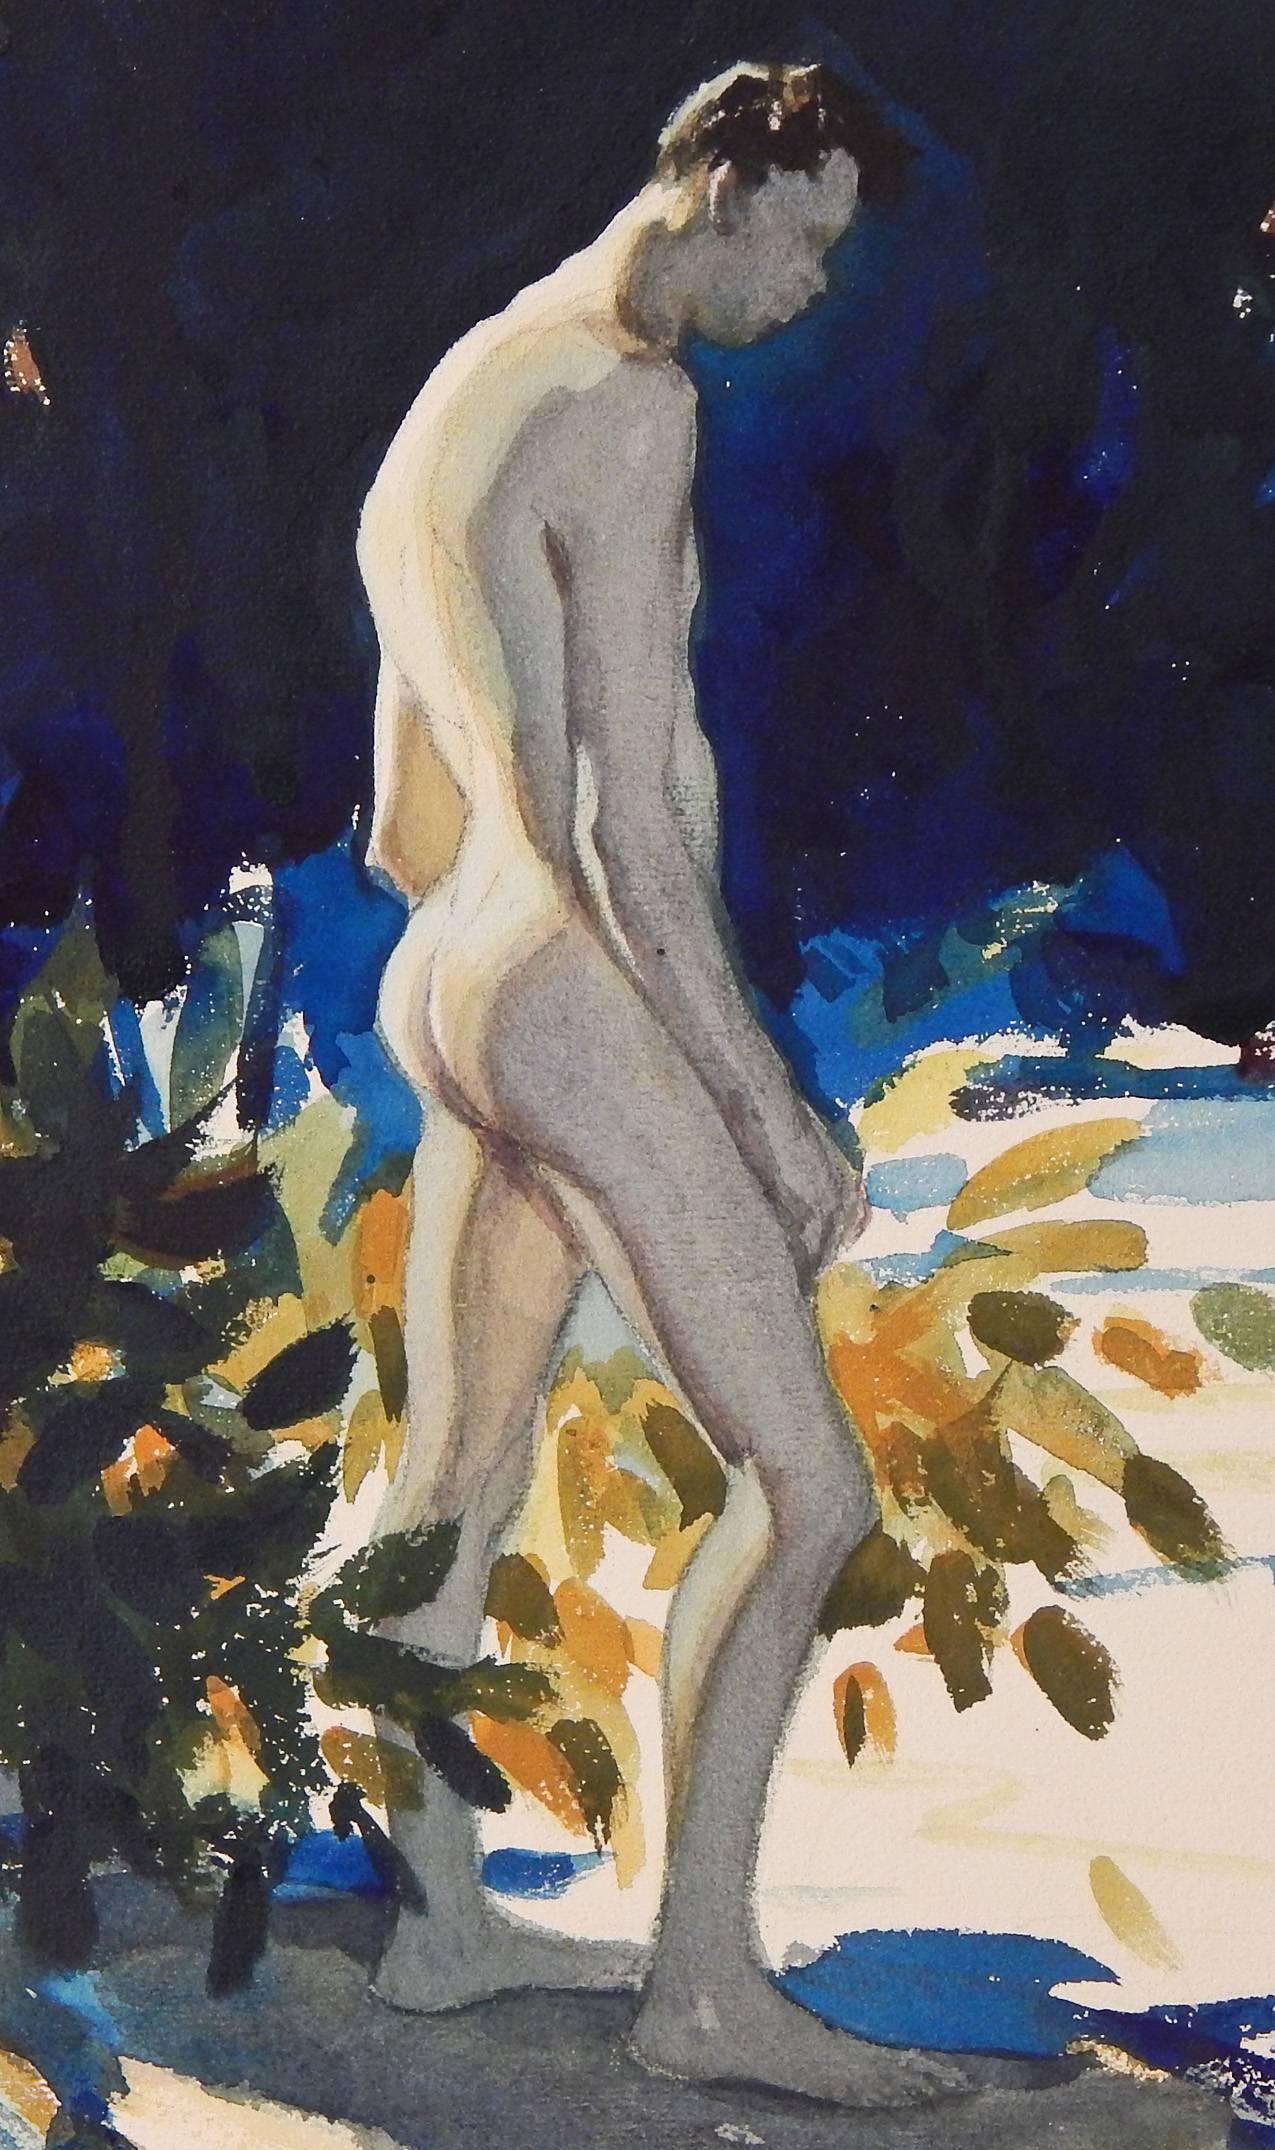 Peinte par Wilmot Heitland, l'un des plus grands aquarellistes américains des années 1930, cette représentation ensoleillée d'une indigène dominicaine, nue et s'avançant vers un bassin d'eau, capture la luxuriance de la région tropicale avec